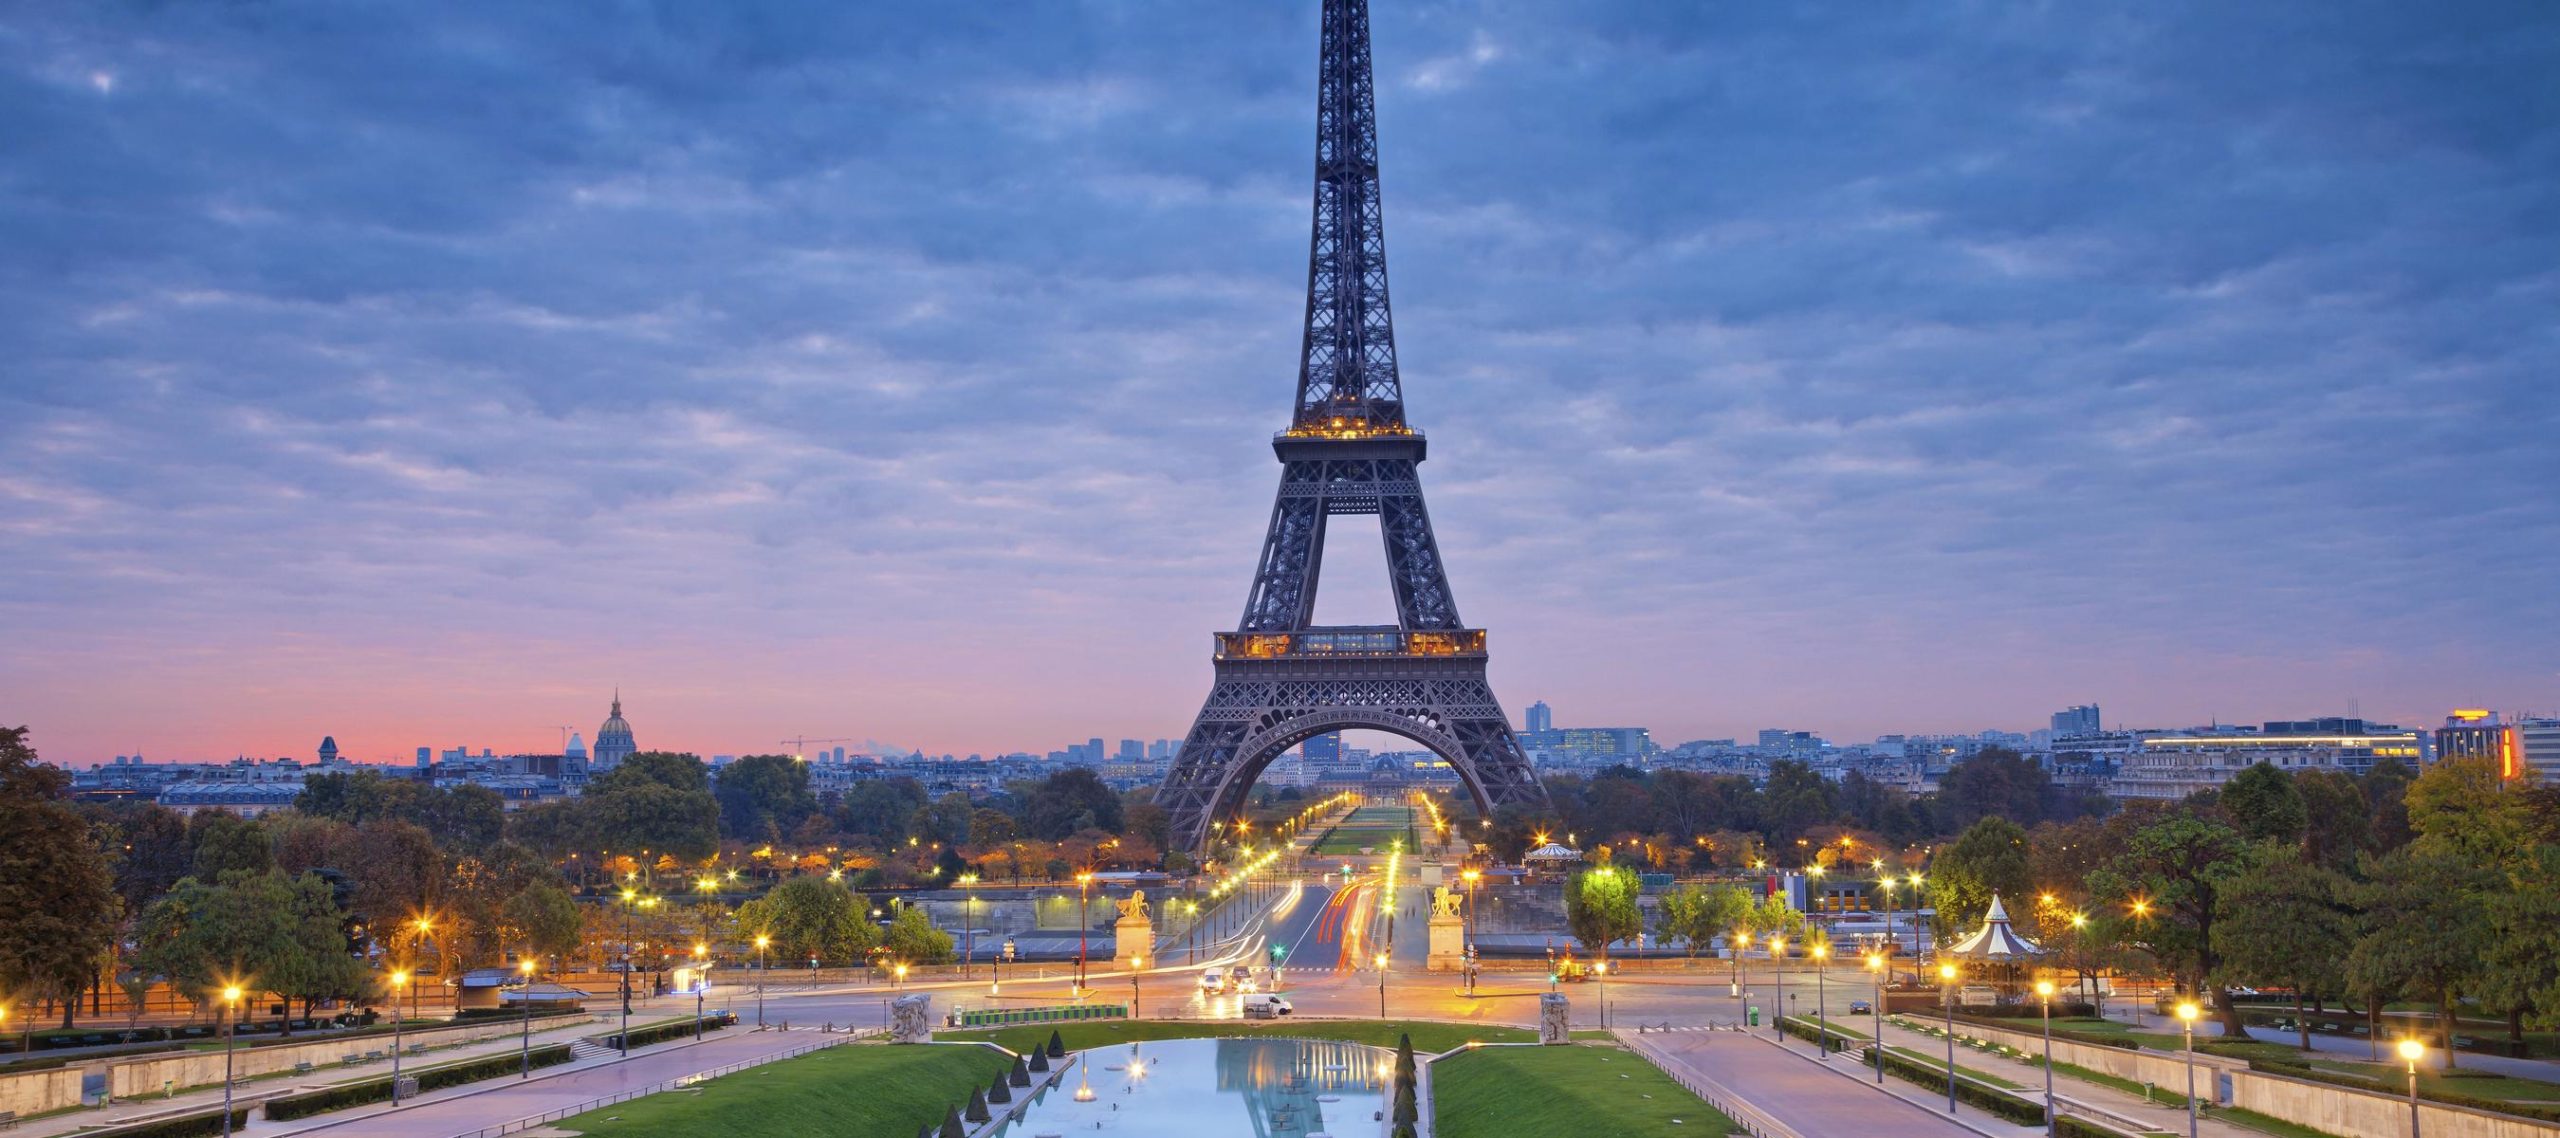 Paris là một điểm đến thú vị trong tour du lịch châu Âu